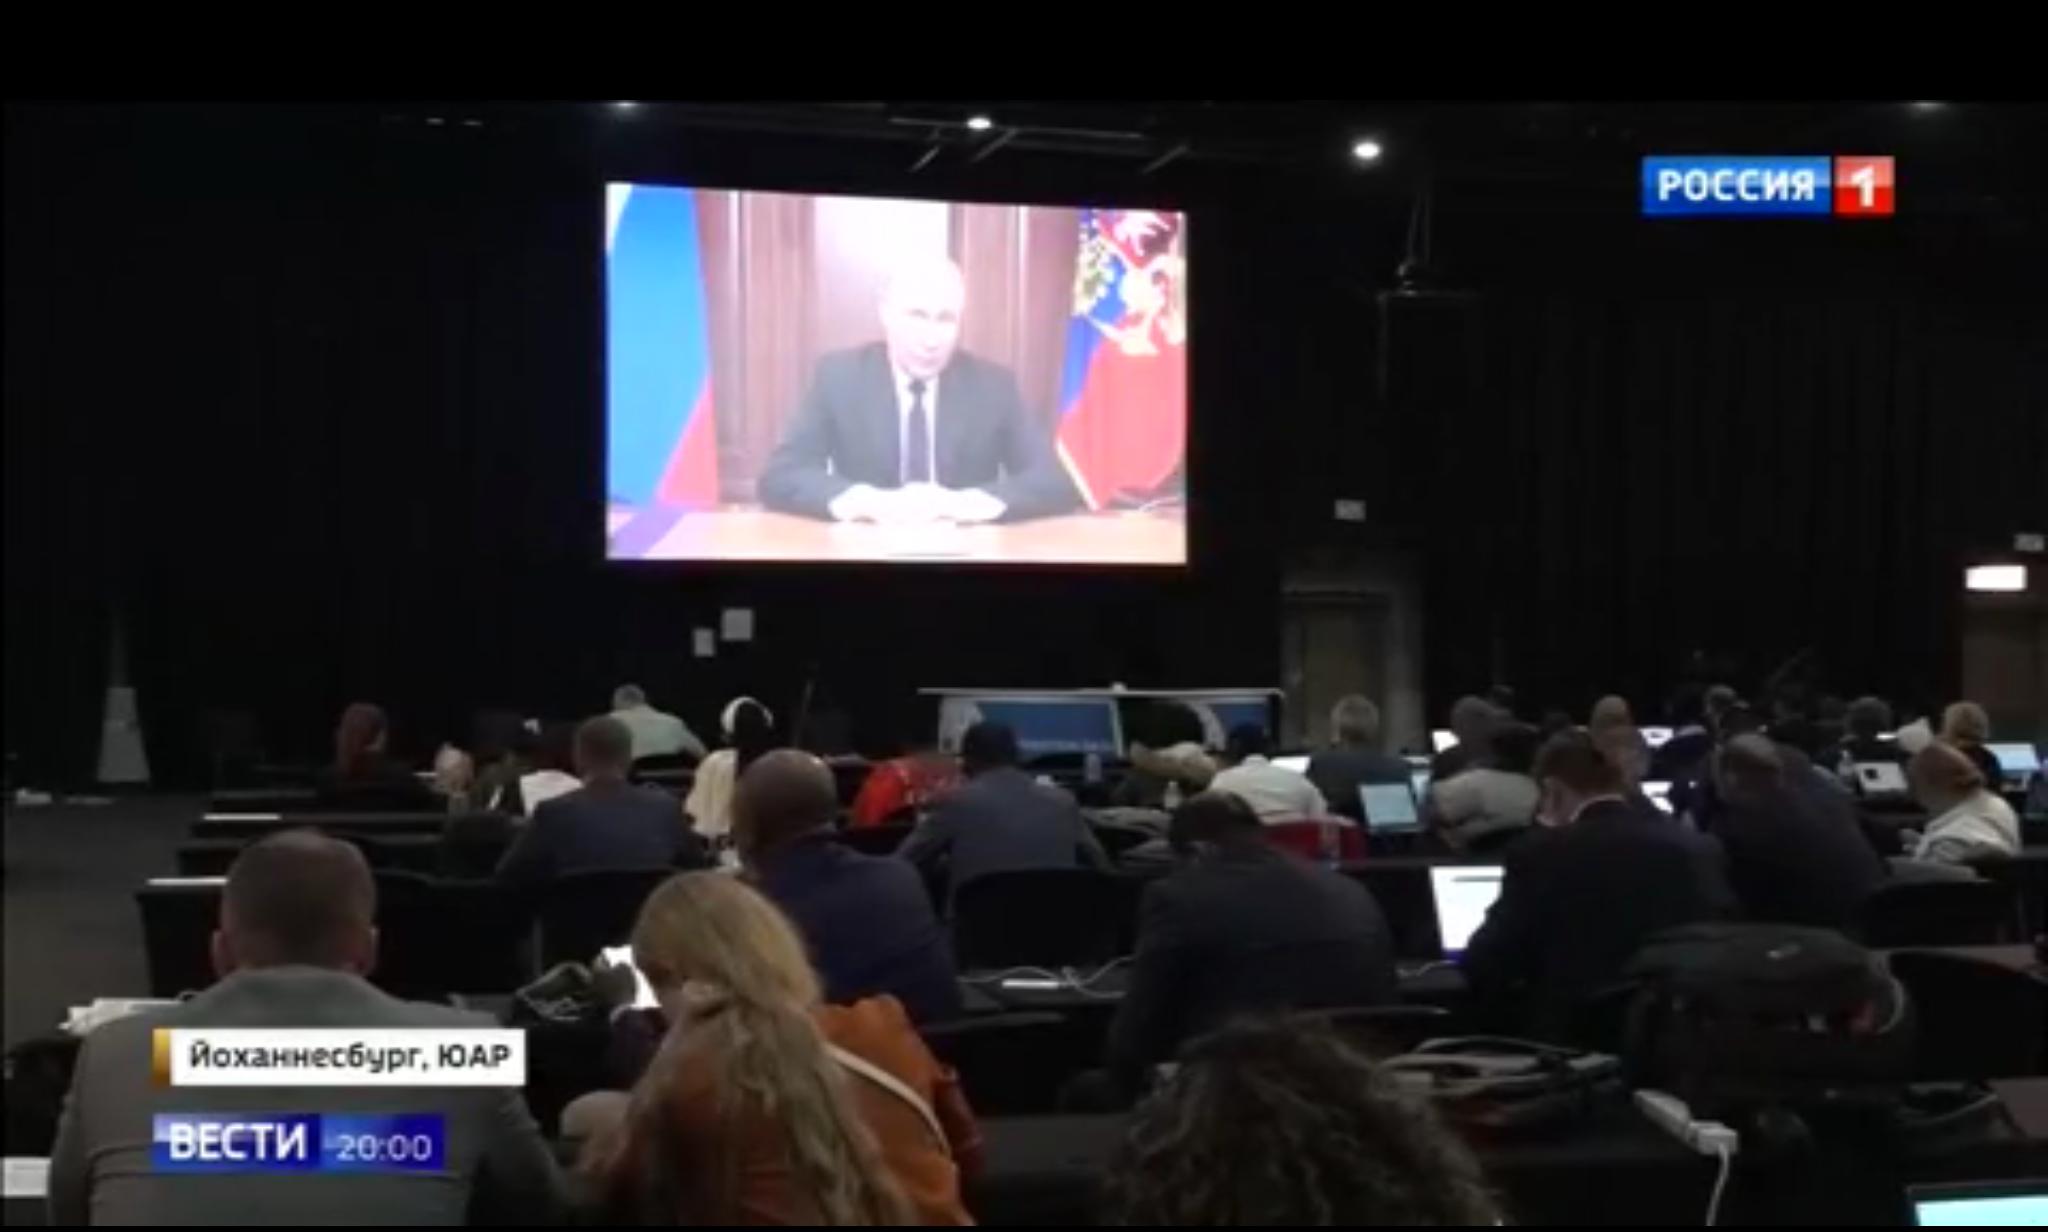 Sala konferencyjna. Na ekranie przemawiający Putin